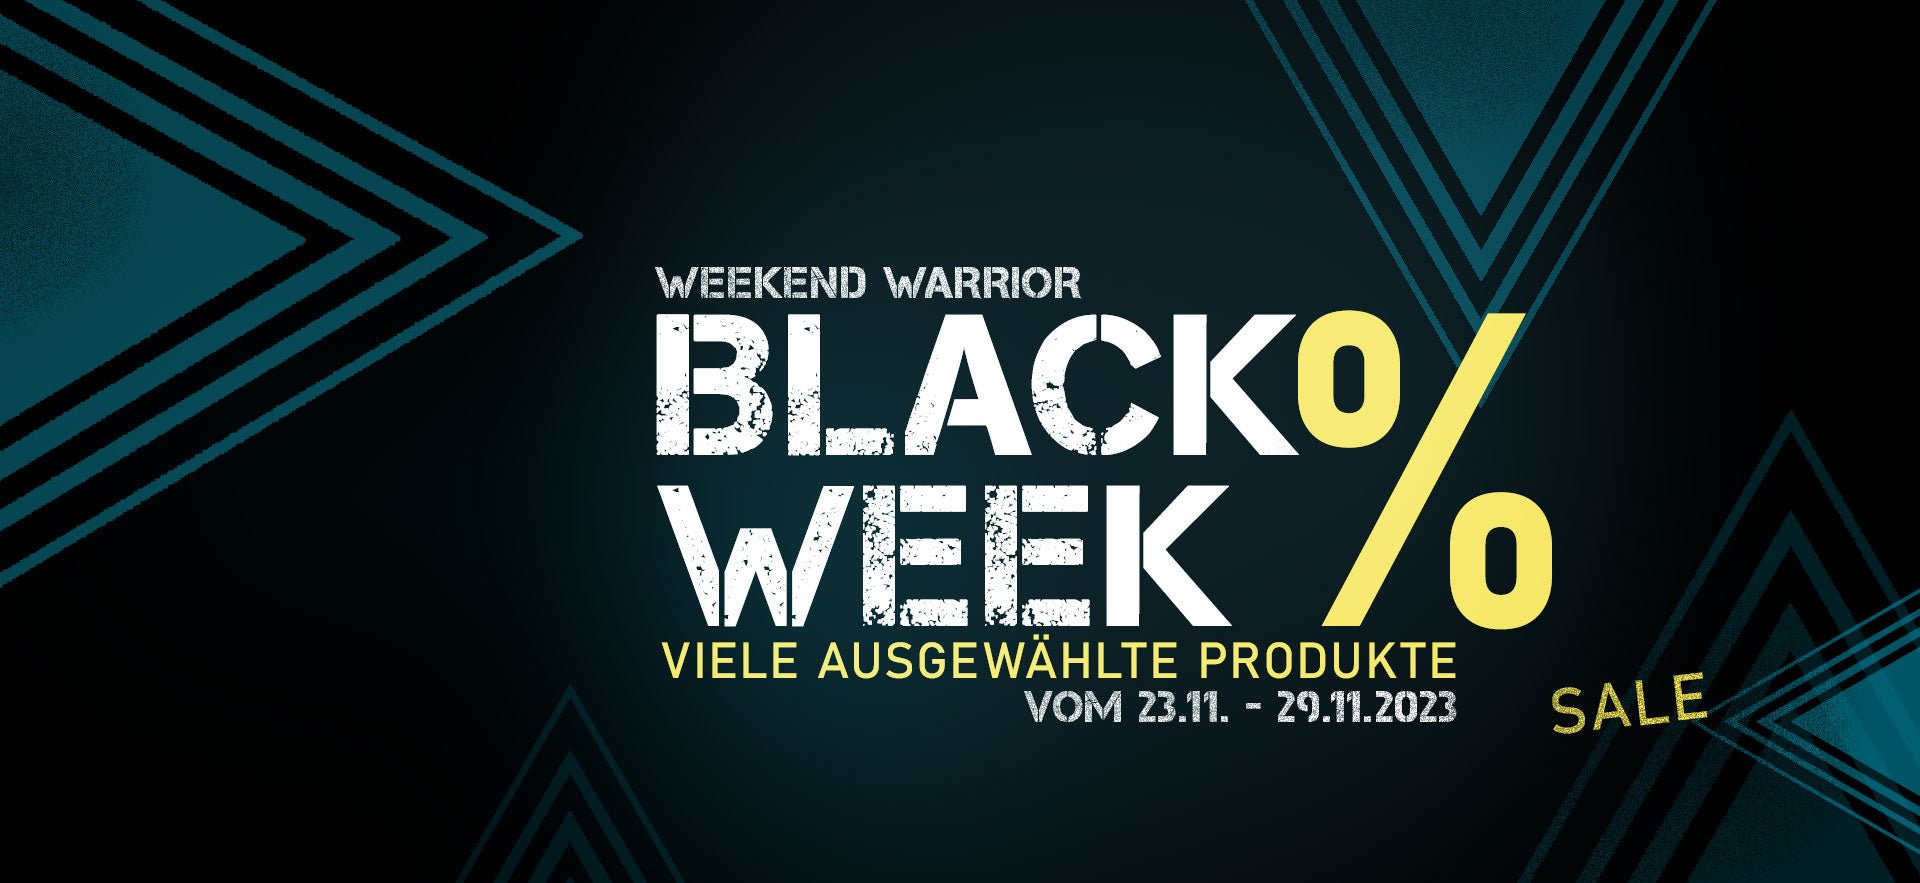 Weekend Warrior Blackweek - Weekend-Warrior.Shop